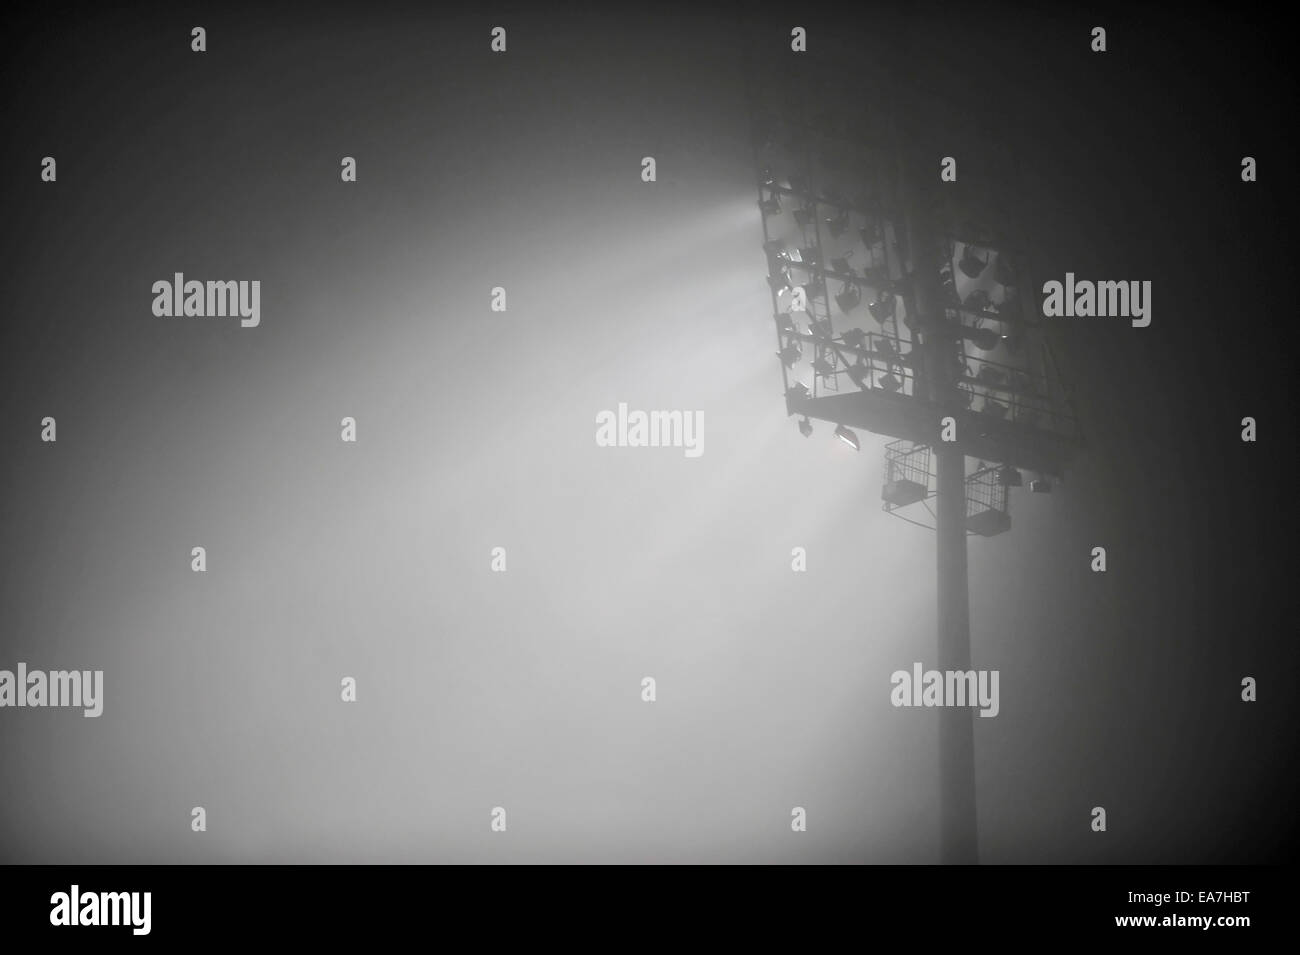 Les projecteurs du stade de football sont vus à travers un épais brouillard dans la nuit Banque D'Images